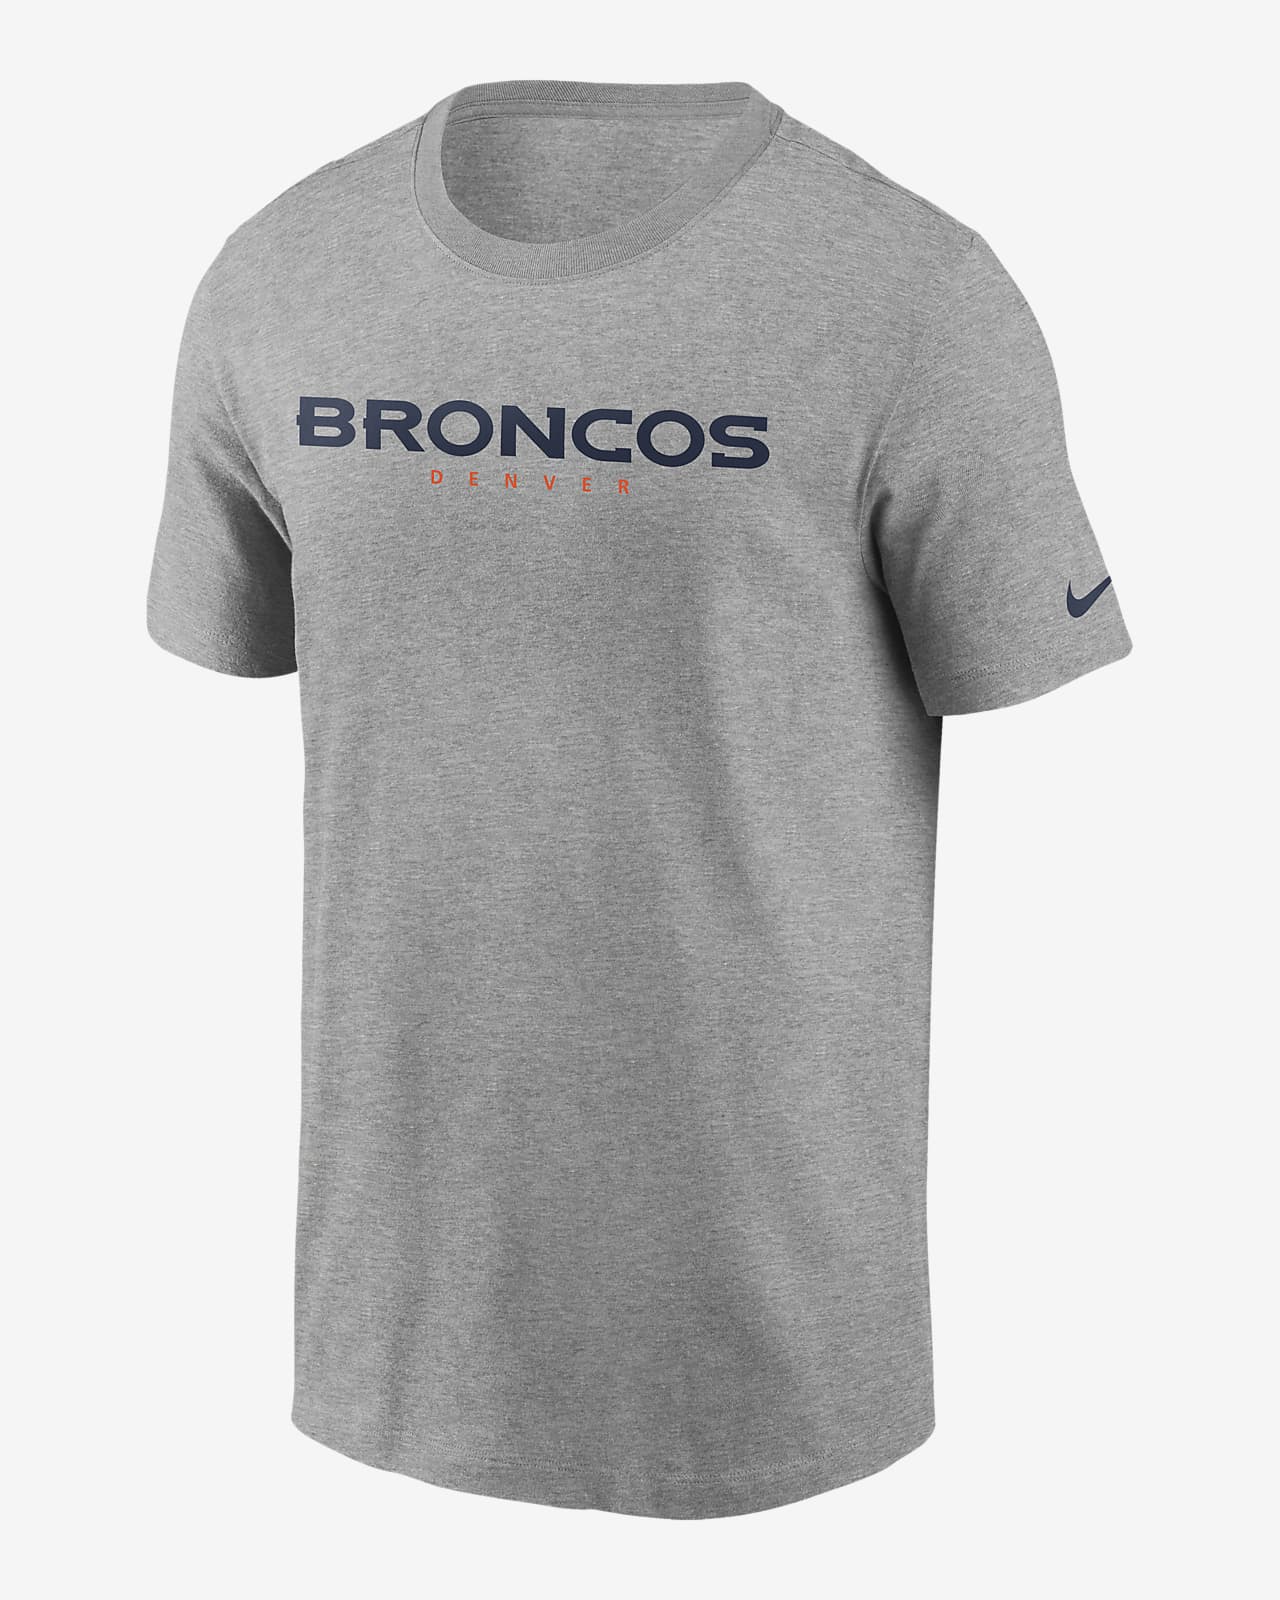 Nike (NFL Broncos) Men's T-Shirt. Nike.com